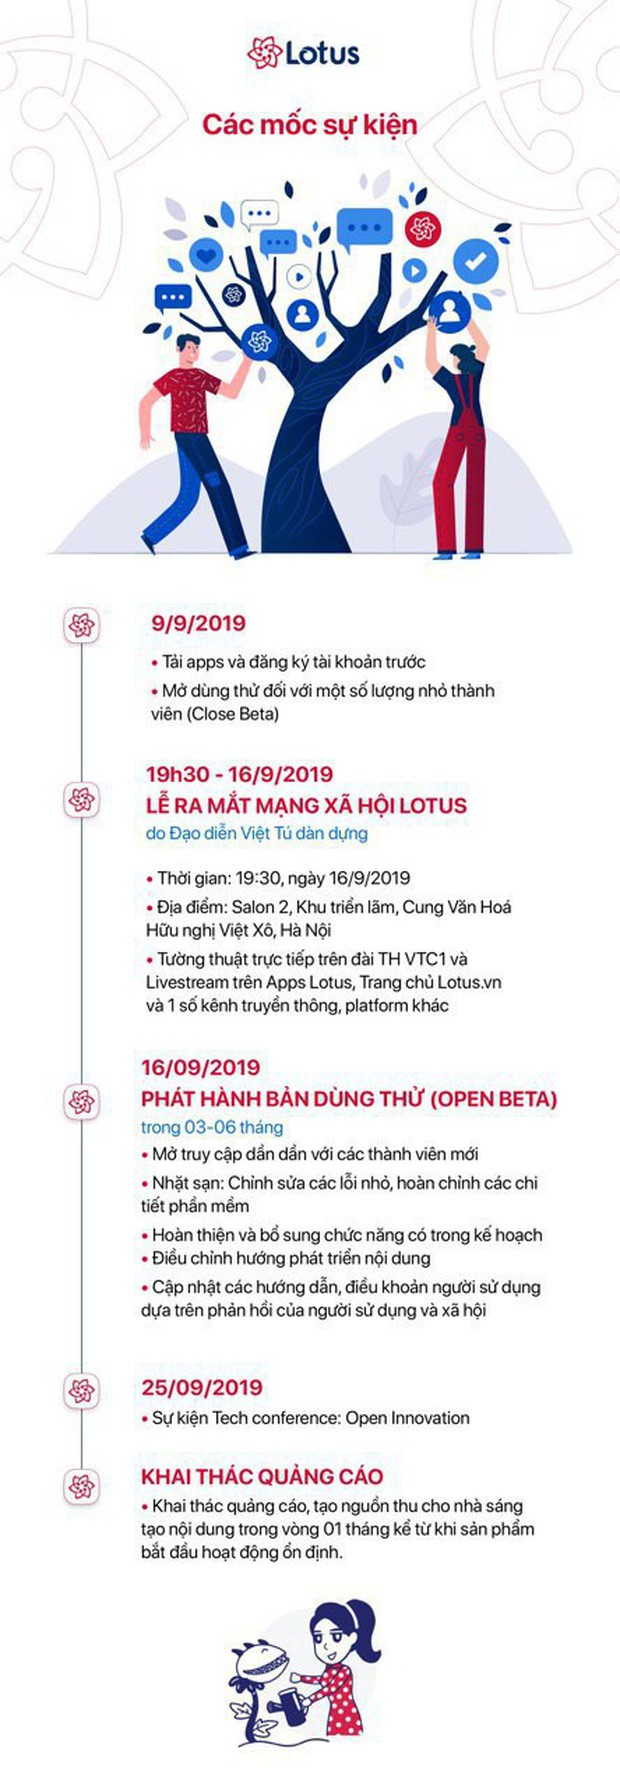 Đạo diễn Việt Tú hé lộ những thông tin nóng hổi về buổi ra mắt MXH Lotus: Đây sẽ là sự kiện công nghệ làm thỏa mãn tất cả mọi người! - Ảnh 7.